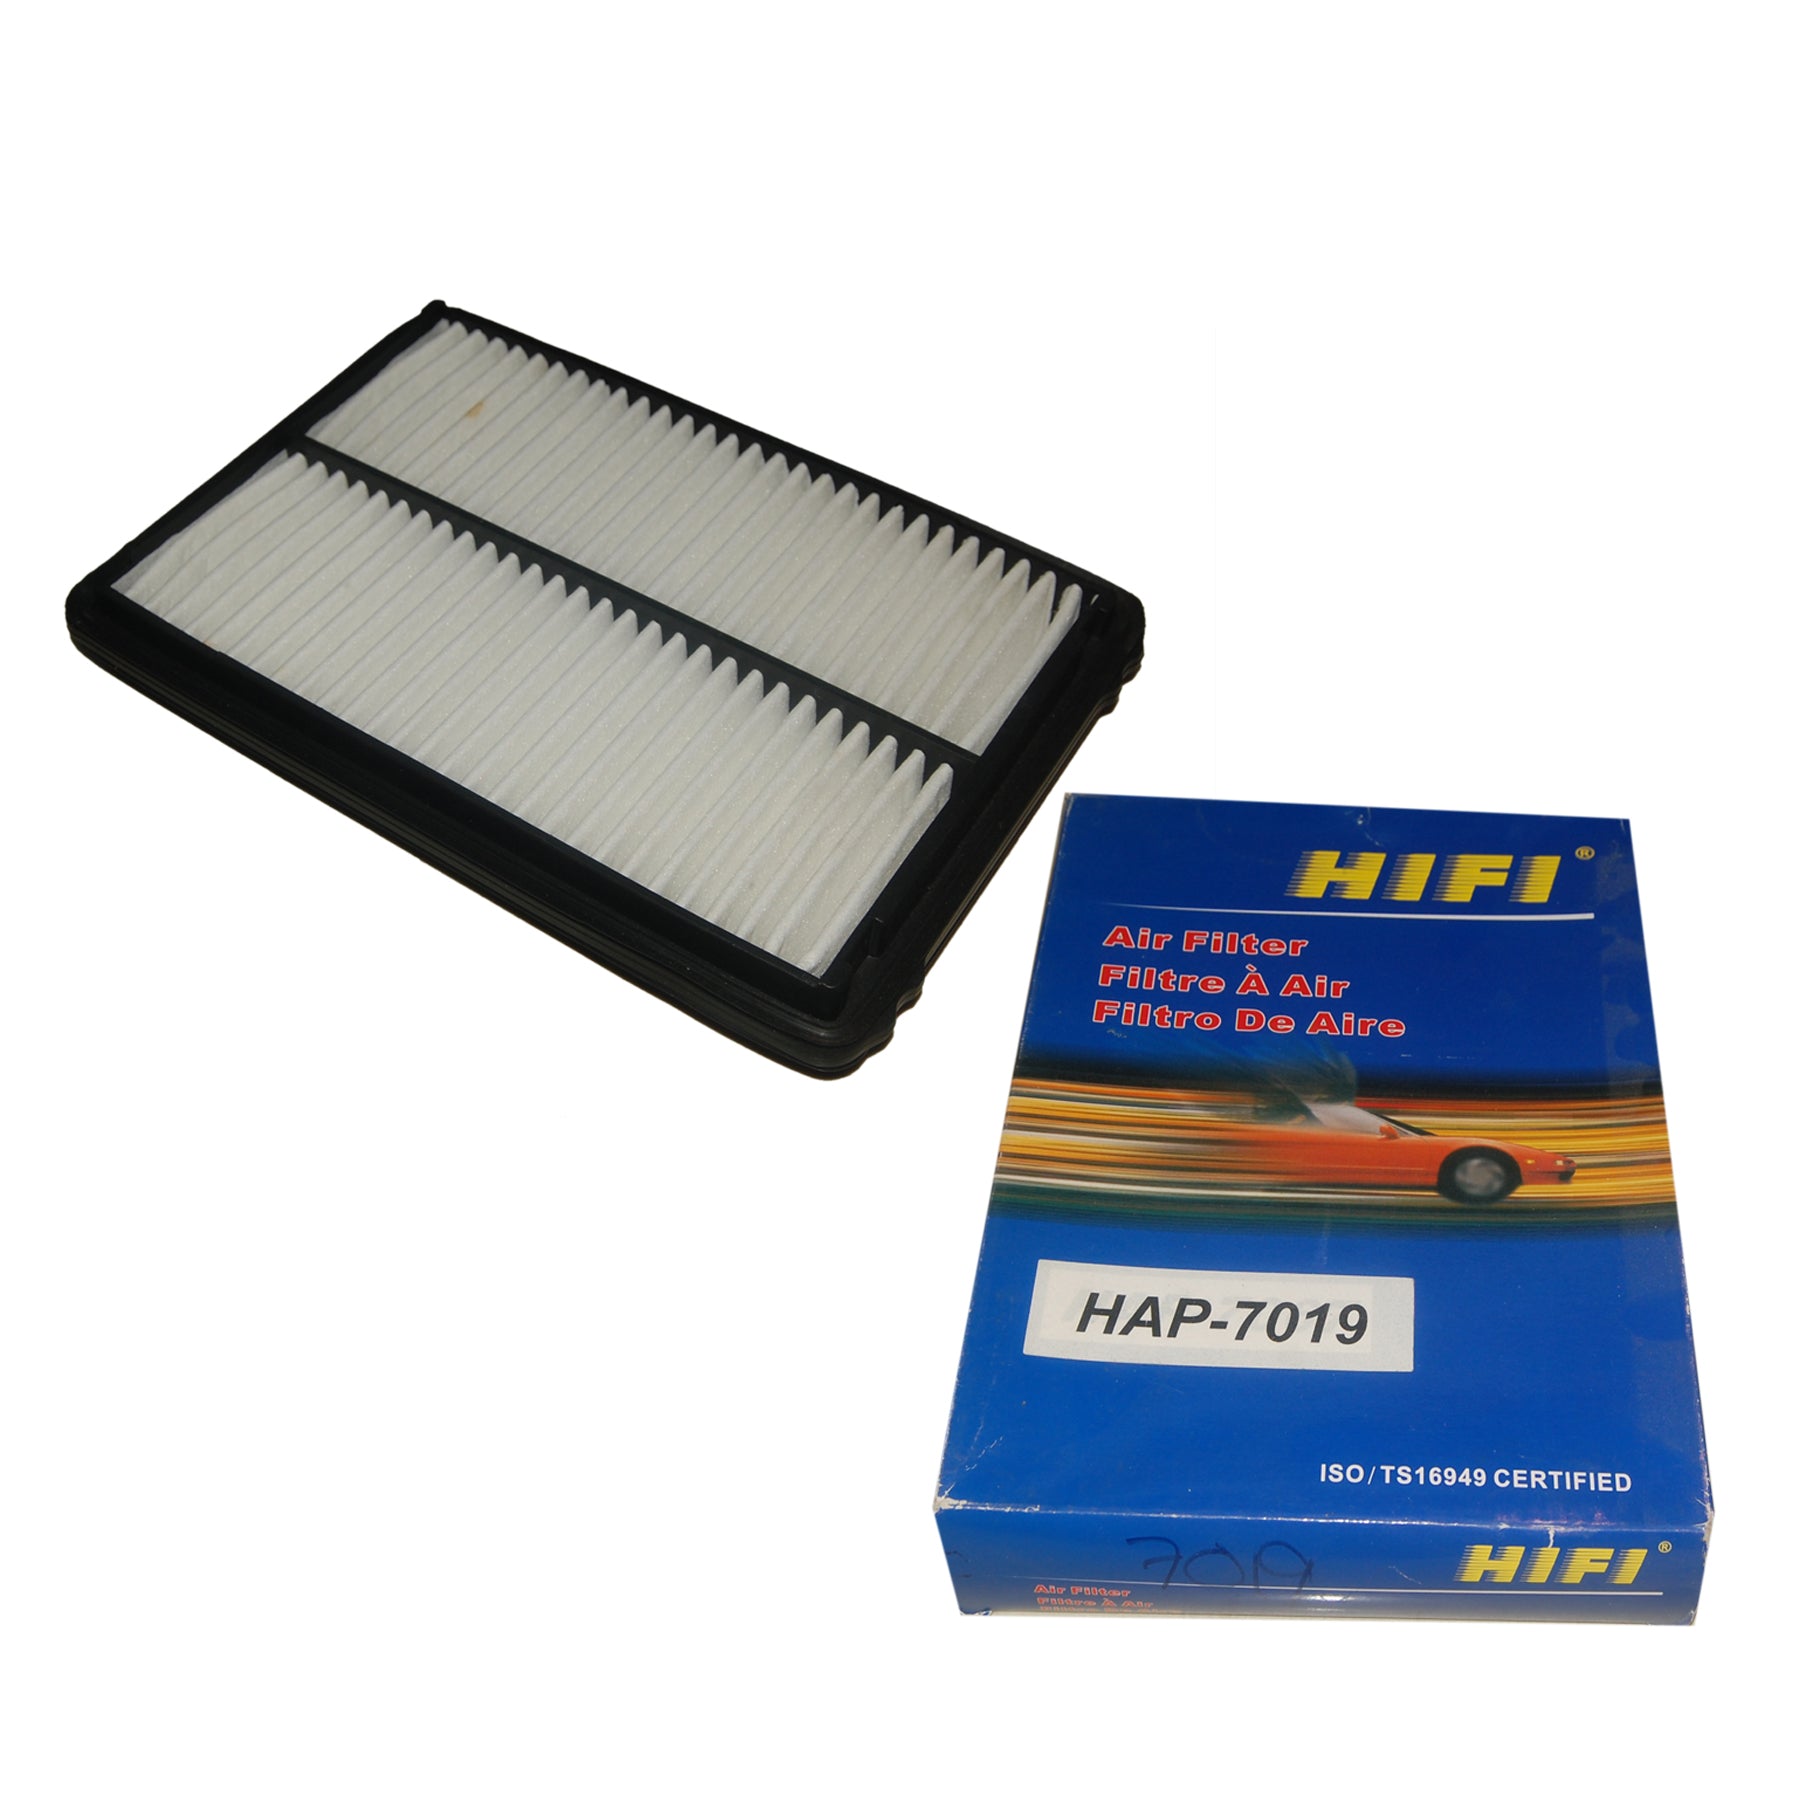 Air Filter, HIFI, H1722-PCC-000, HAP-7019 (000197) - Win Store